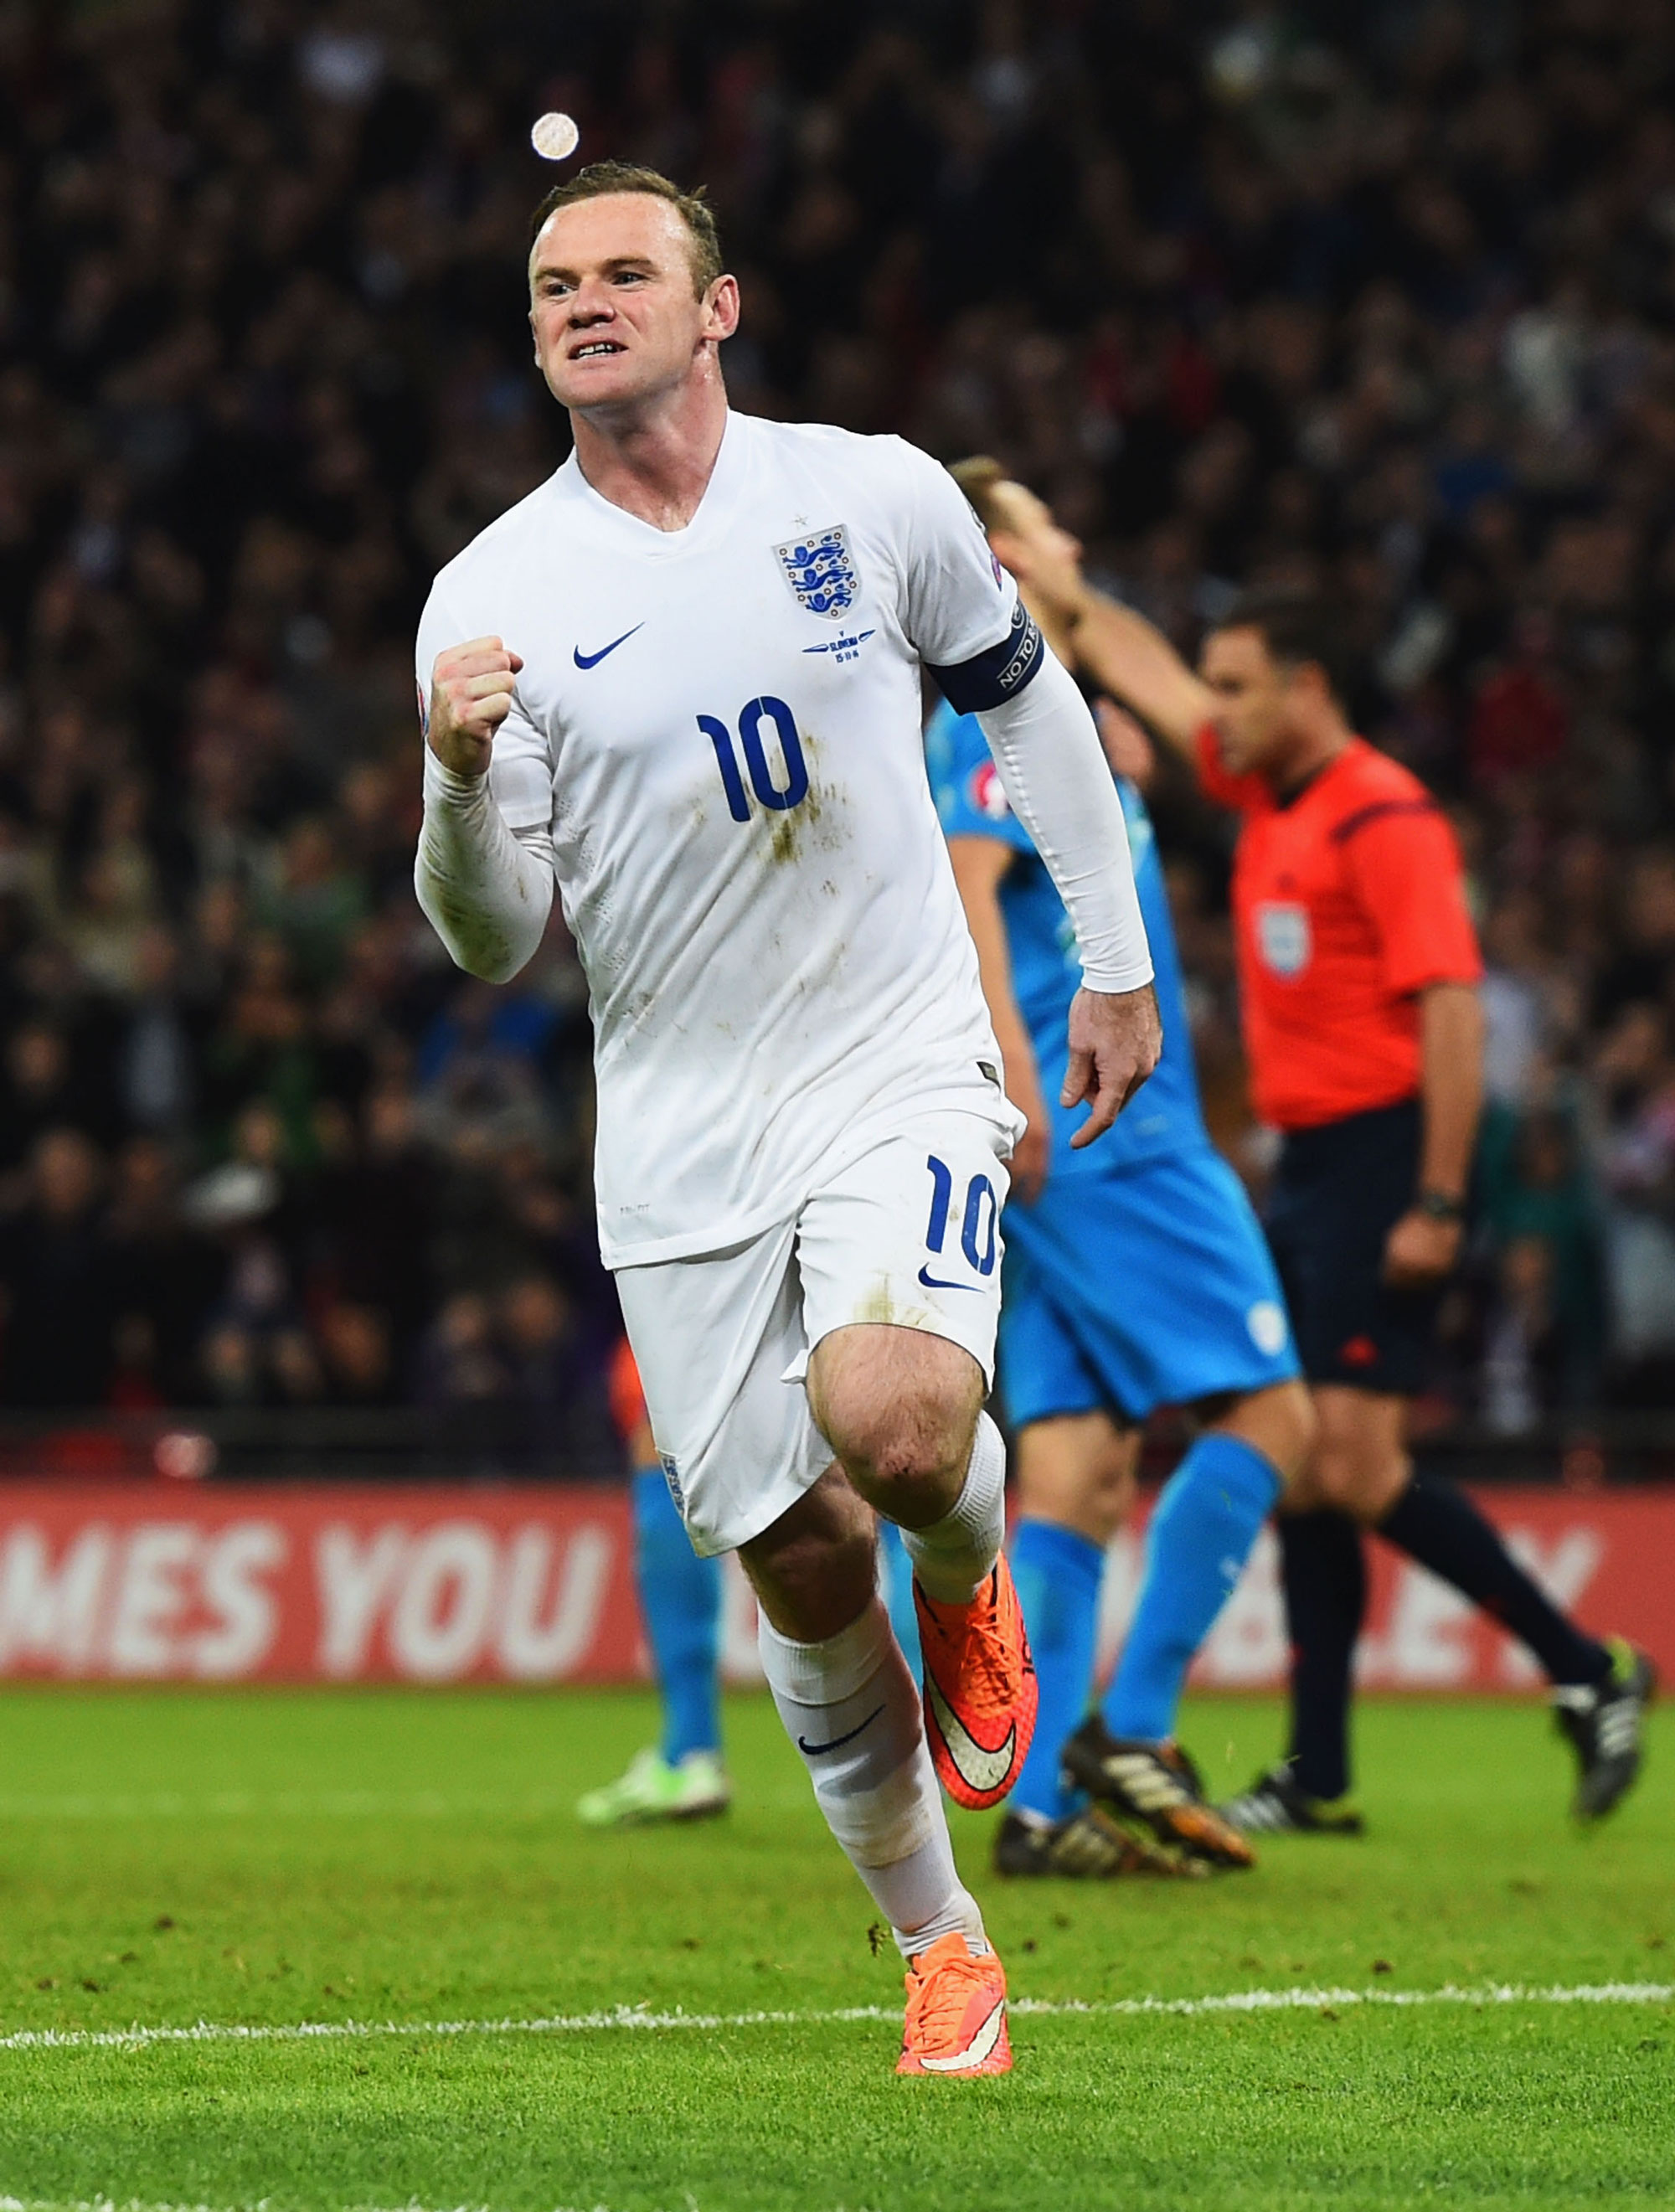 Rooney fica fora da convocação da Inglaterra para jogos contra Escócia e  França - Tribuna do Norte